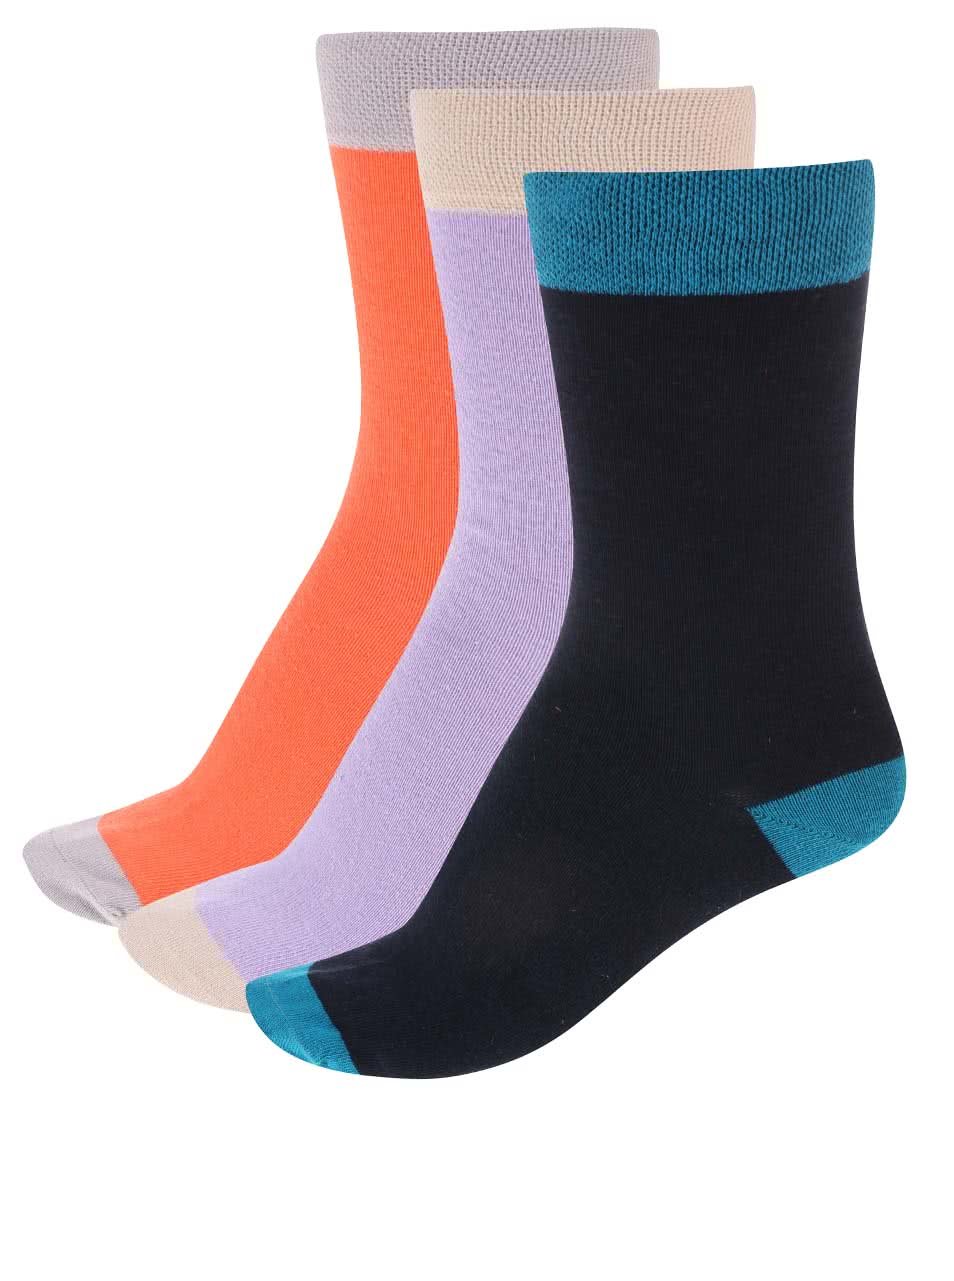 Barevné ponožky v sadě tří párů OJJU